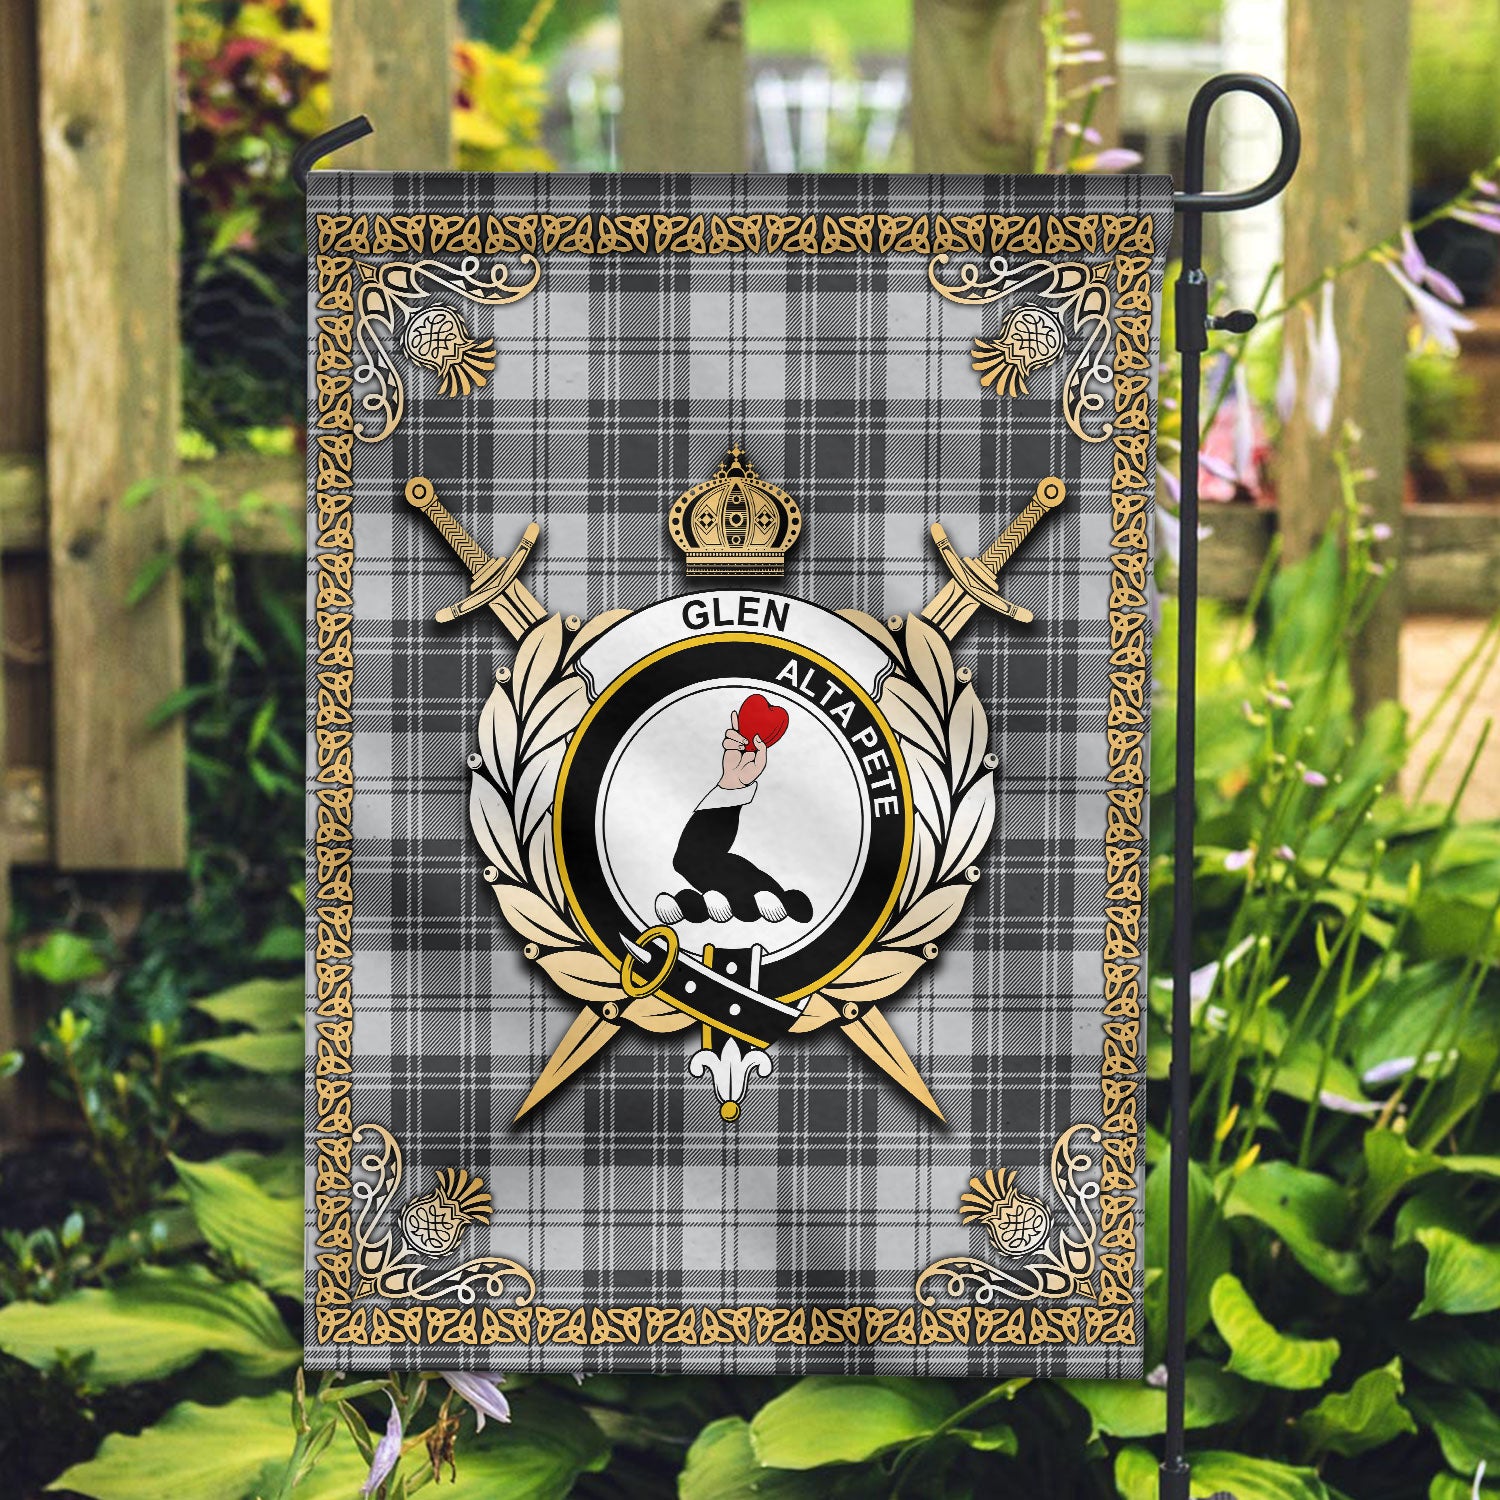 Glen Tartan Crest Garden Flag - Celtic Thistle Style